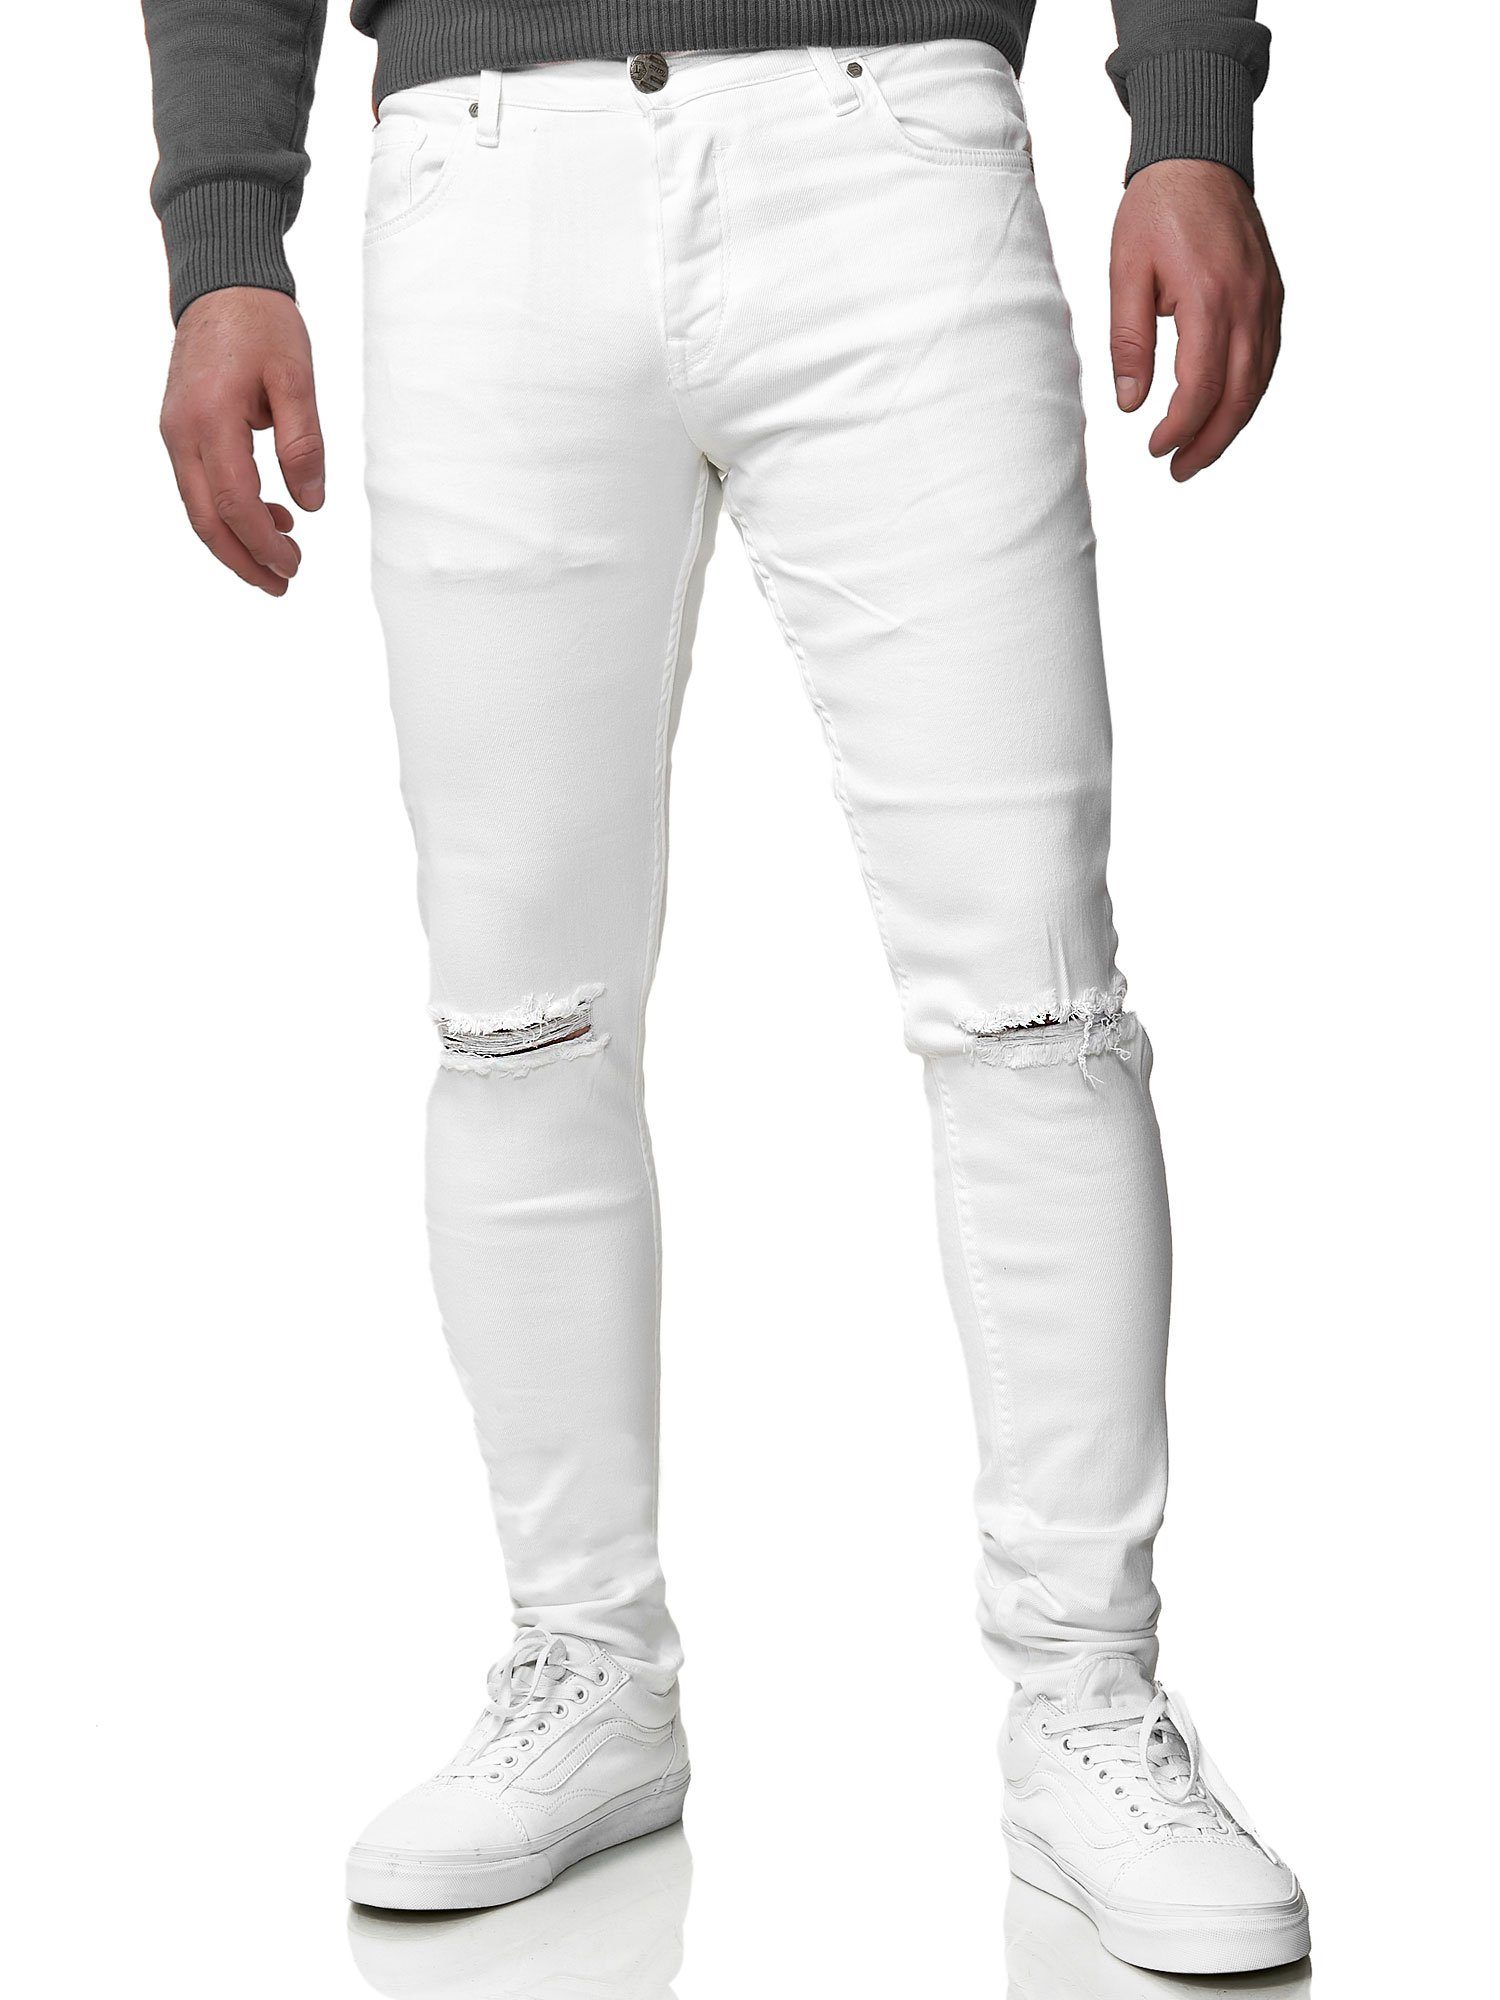 Weiße Herren-Skinny-Jeans online kaufen | OTTO